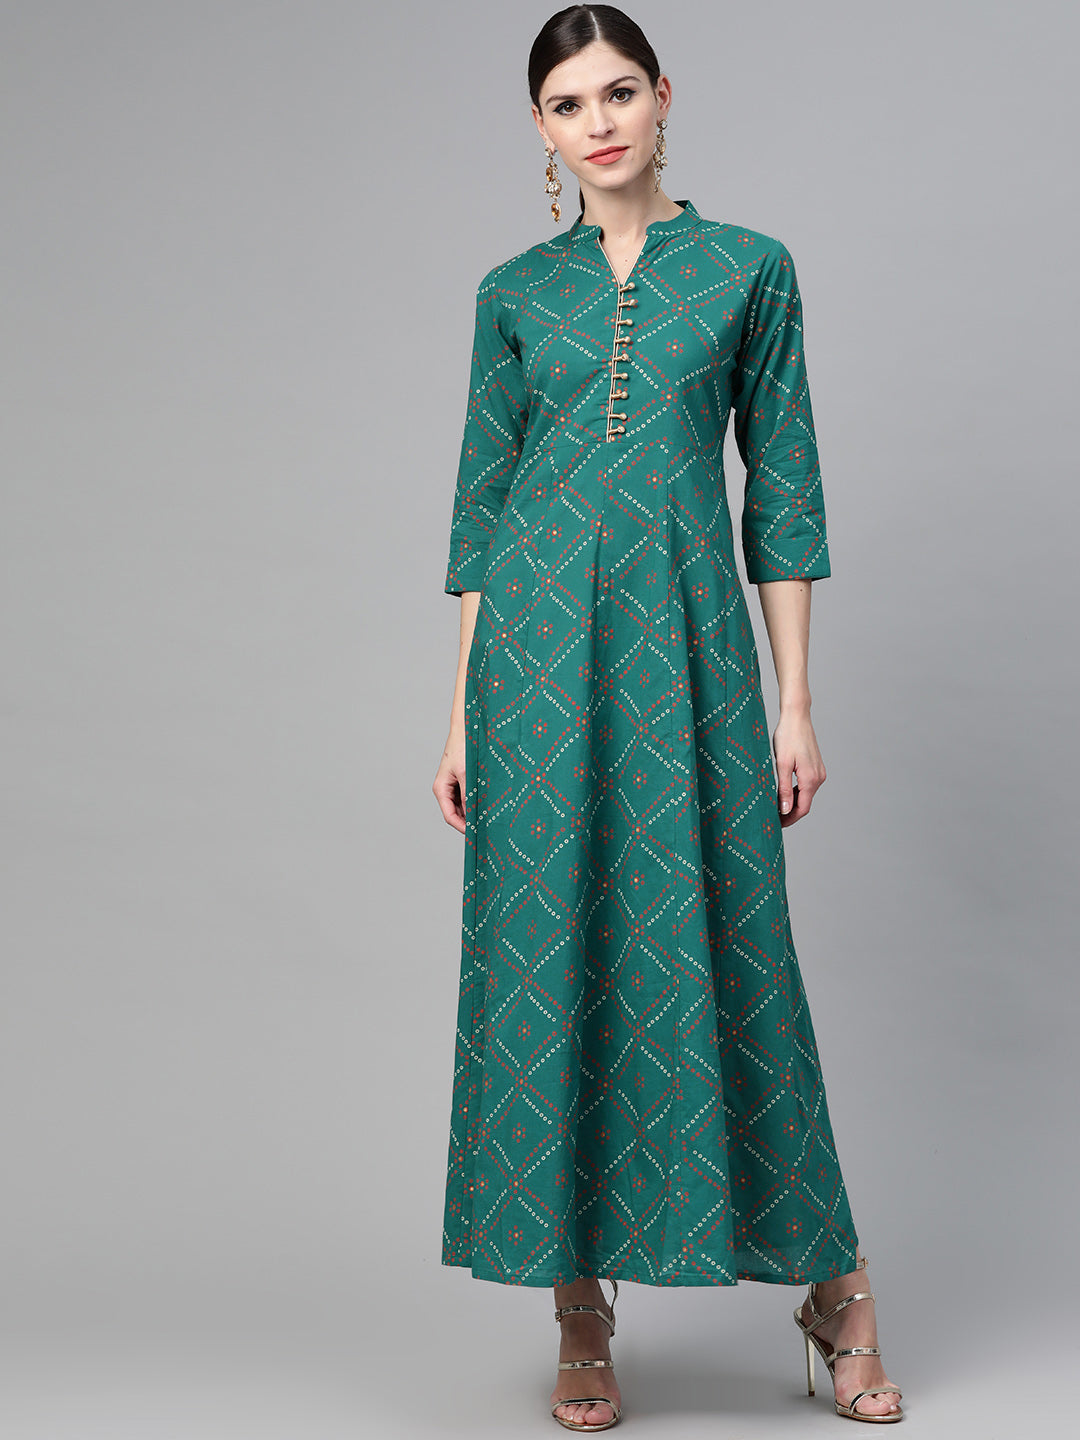 Green Bandhani Printed Flared Maxi Dress